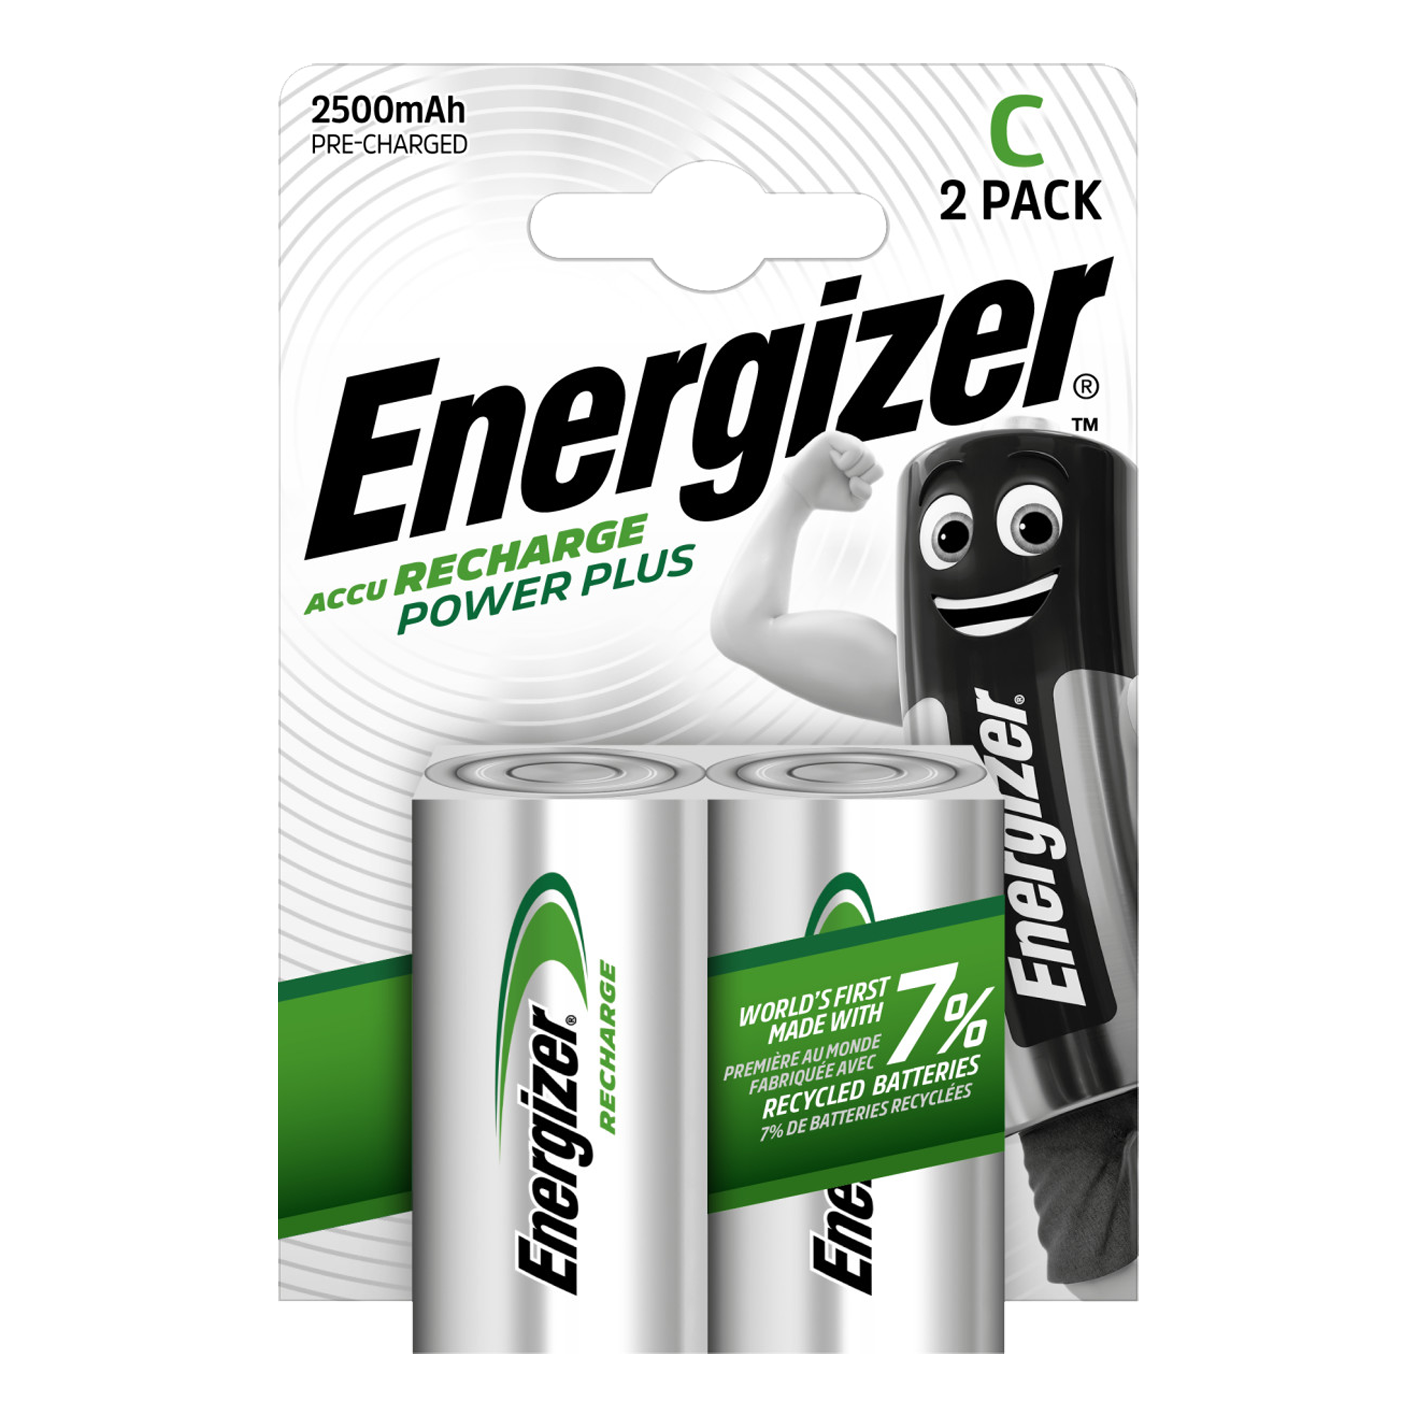 Energizer® C Tamaño 2500mAh Recharge Power Plus, Paquete de 2